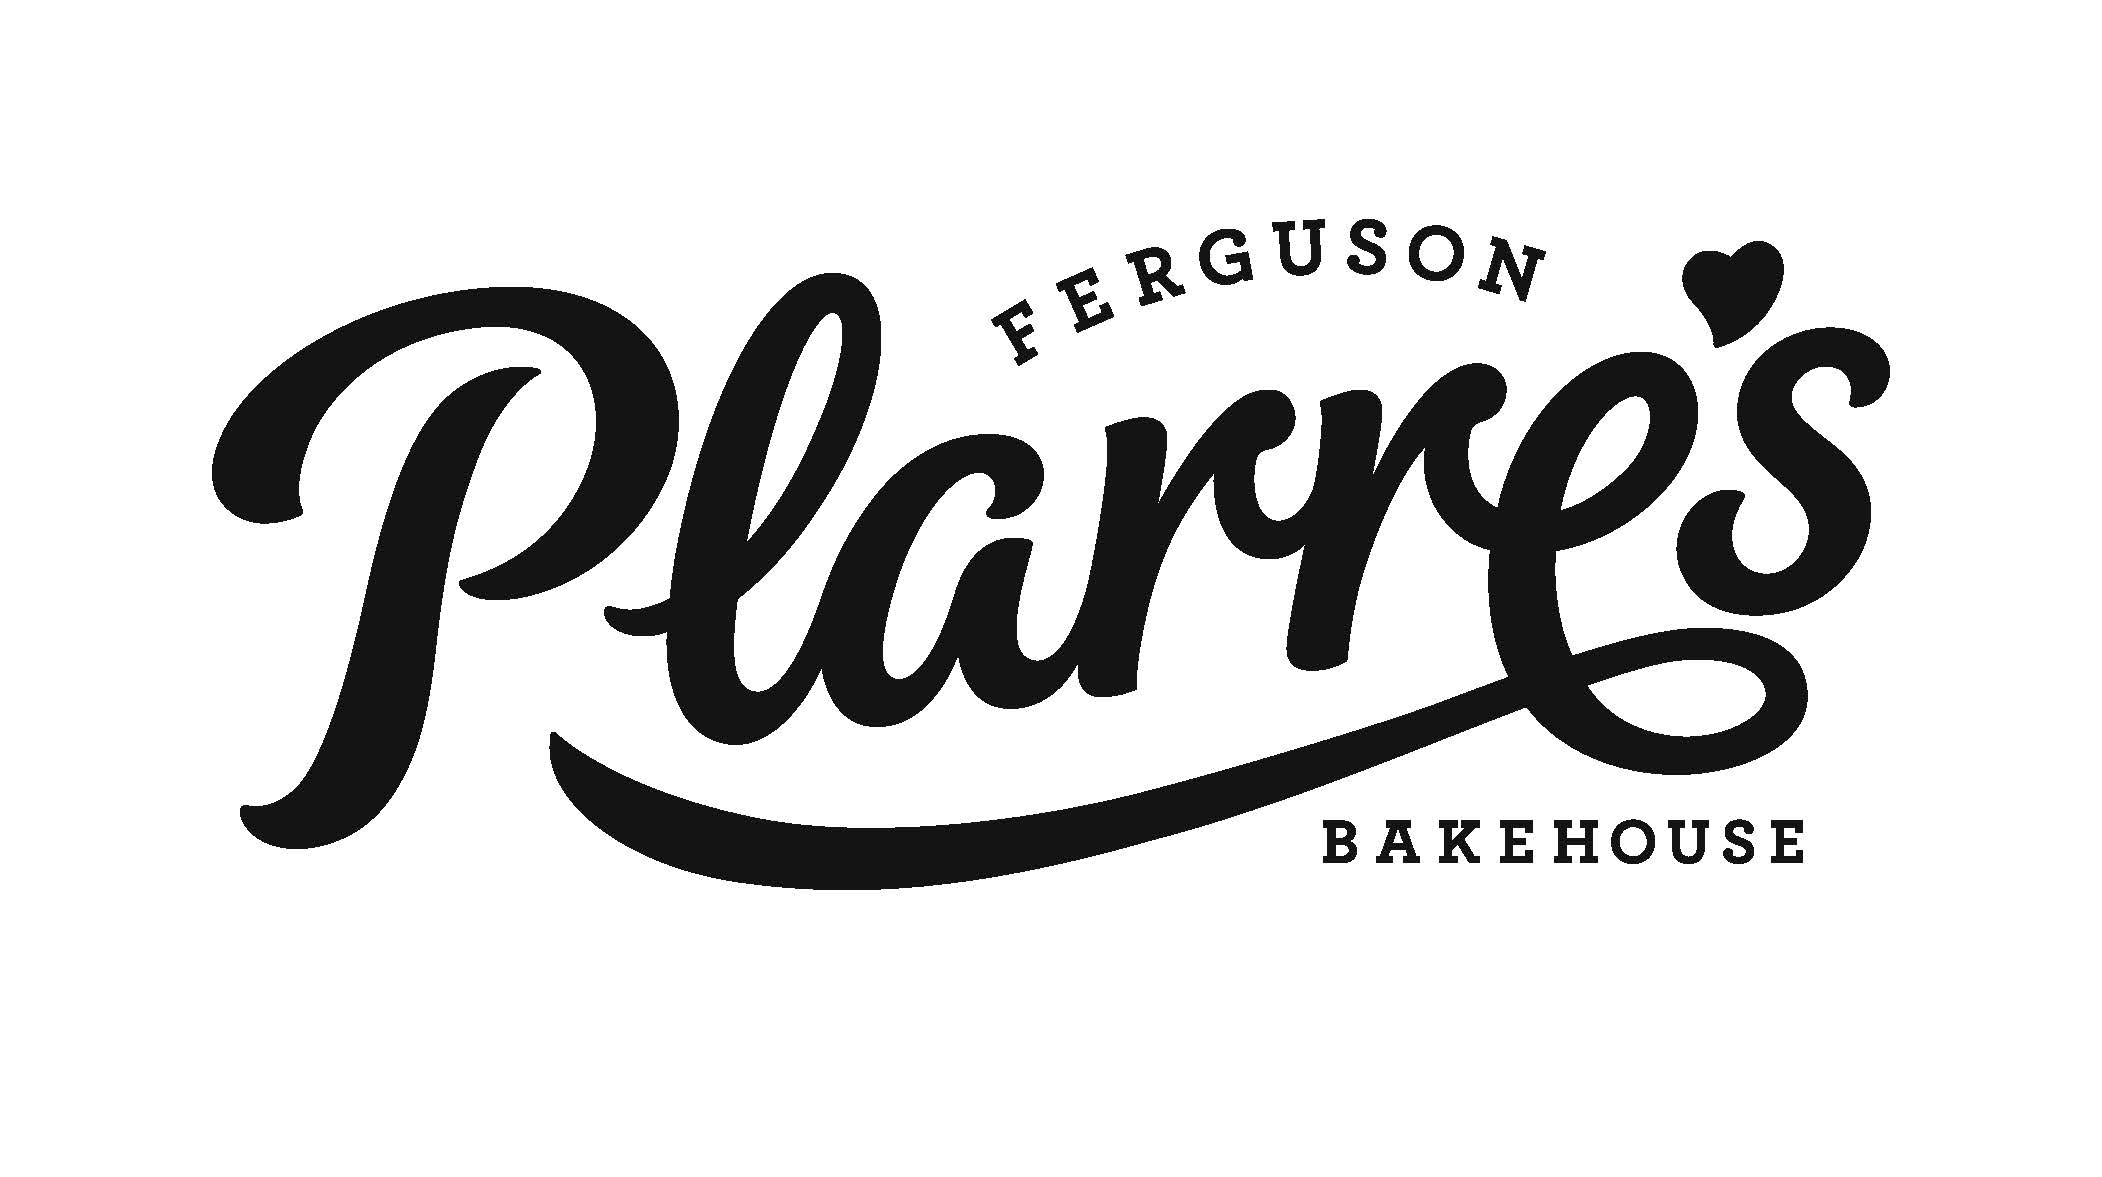 Ferguson Plarre's Bakehouse logo